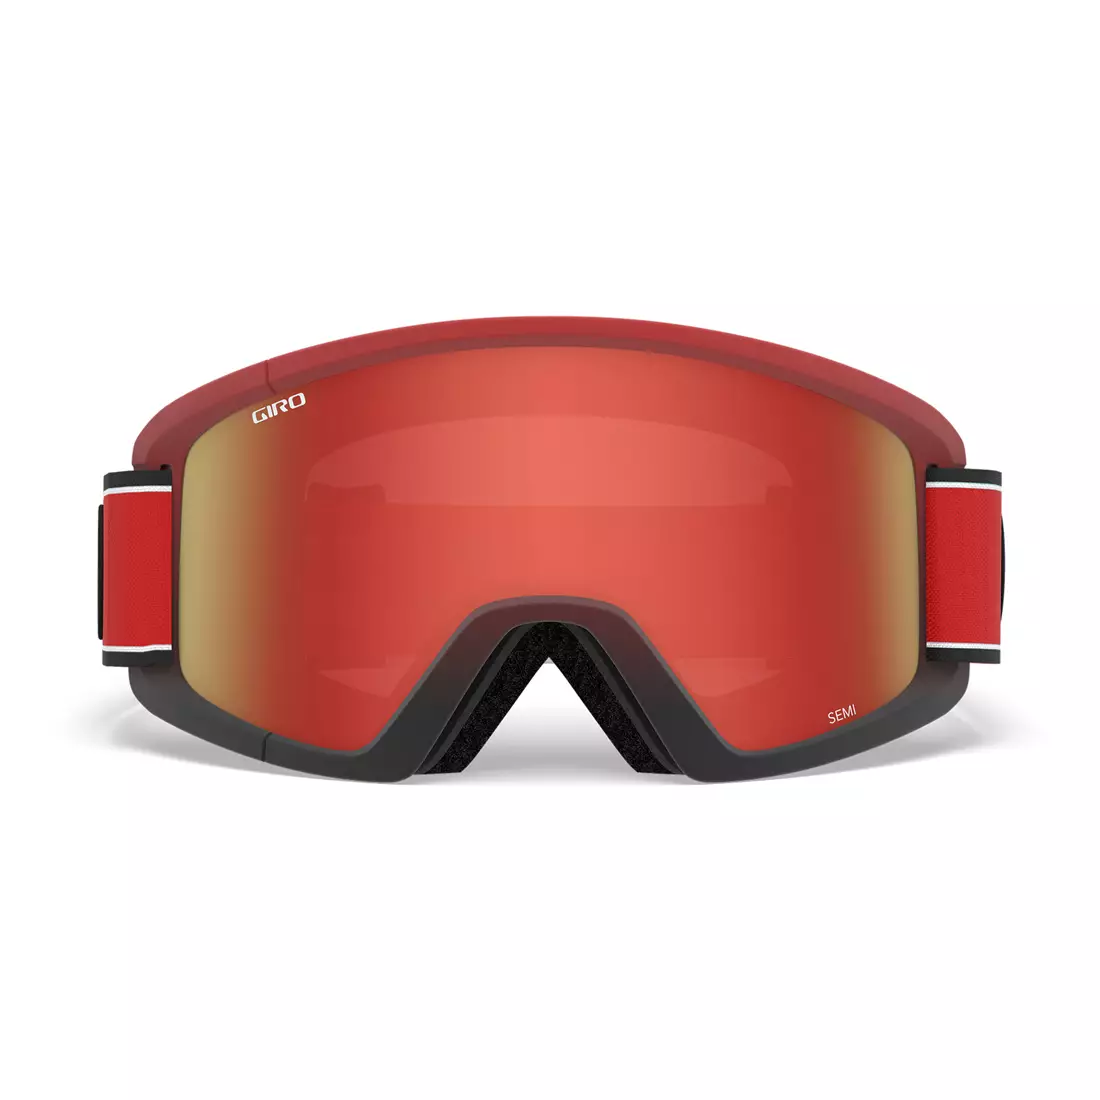 Gogle zimowe narciarskie/snowboardowe GIRO SEMI RED ELEMENT GR-7105390